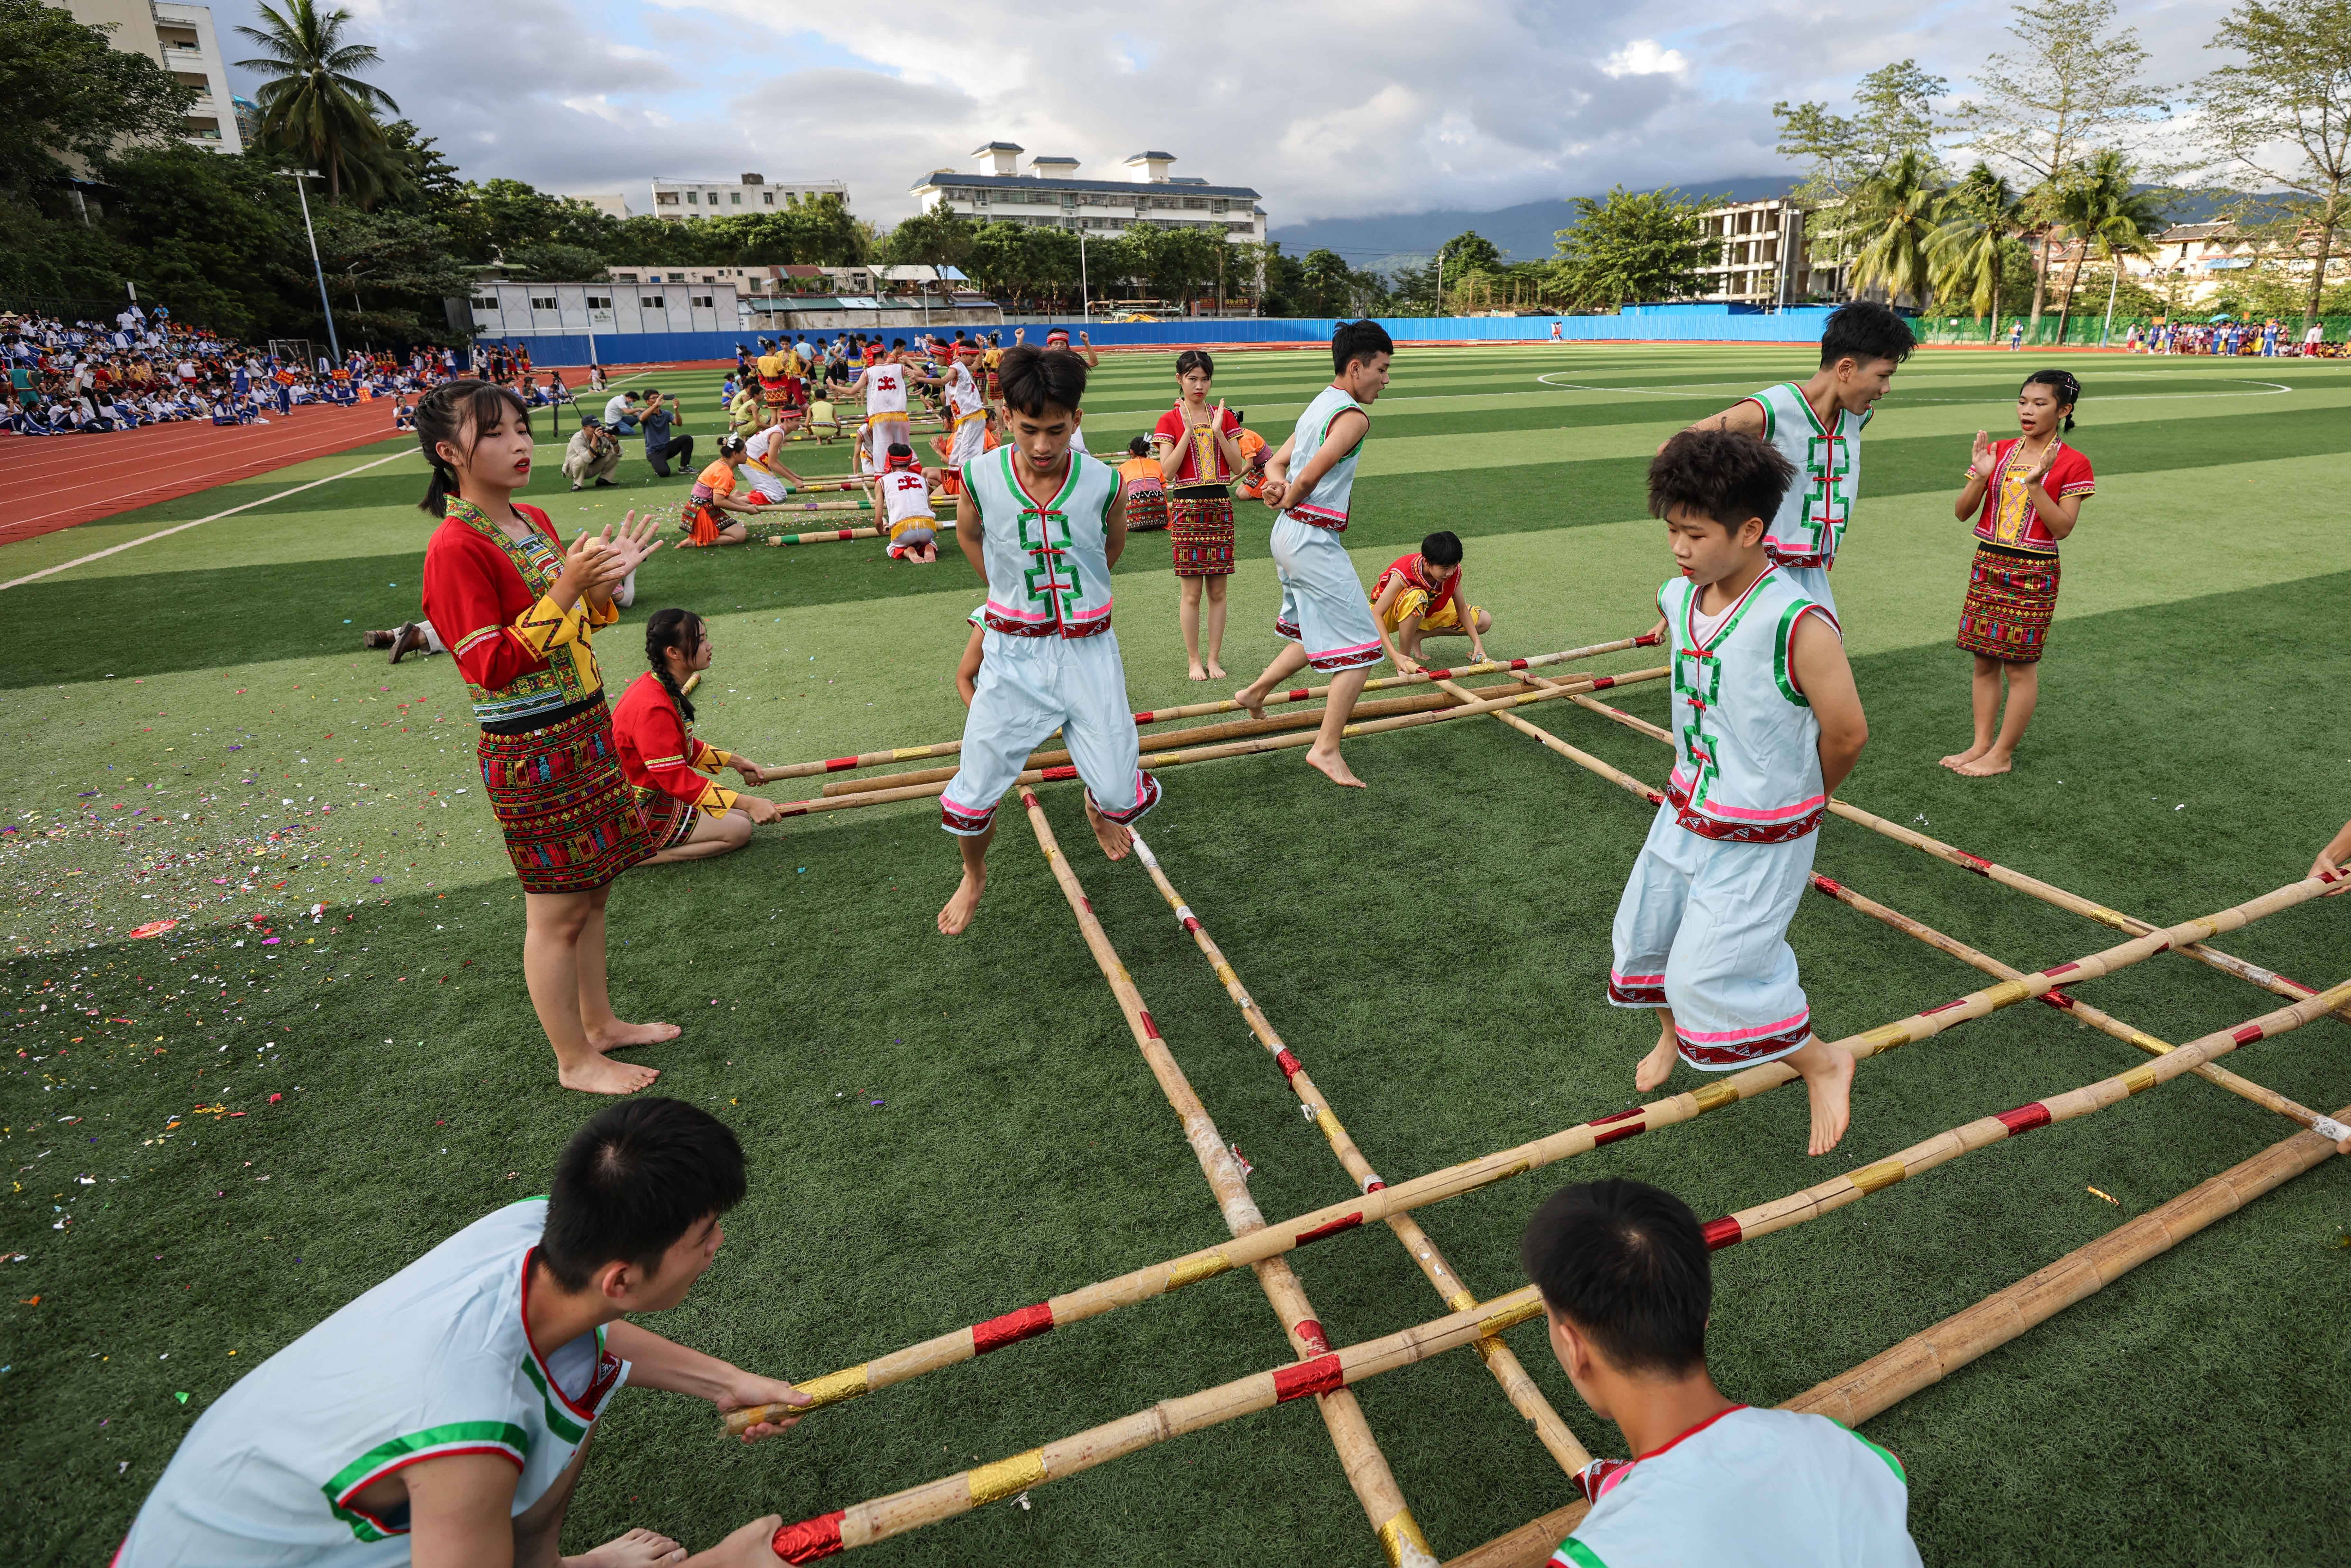 新华社记者 张丽芸 摄当日,一场竹竿舞比赛在海南保亭黎族苗族自治县